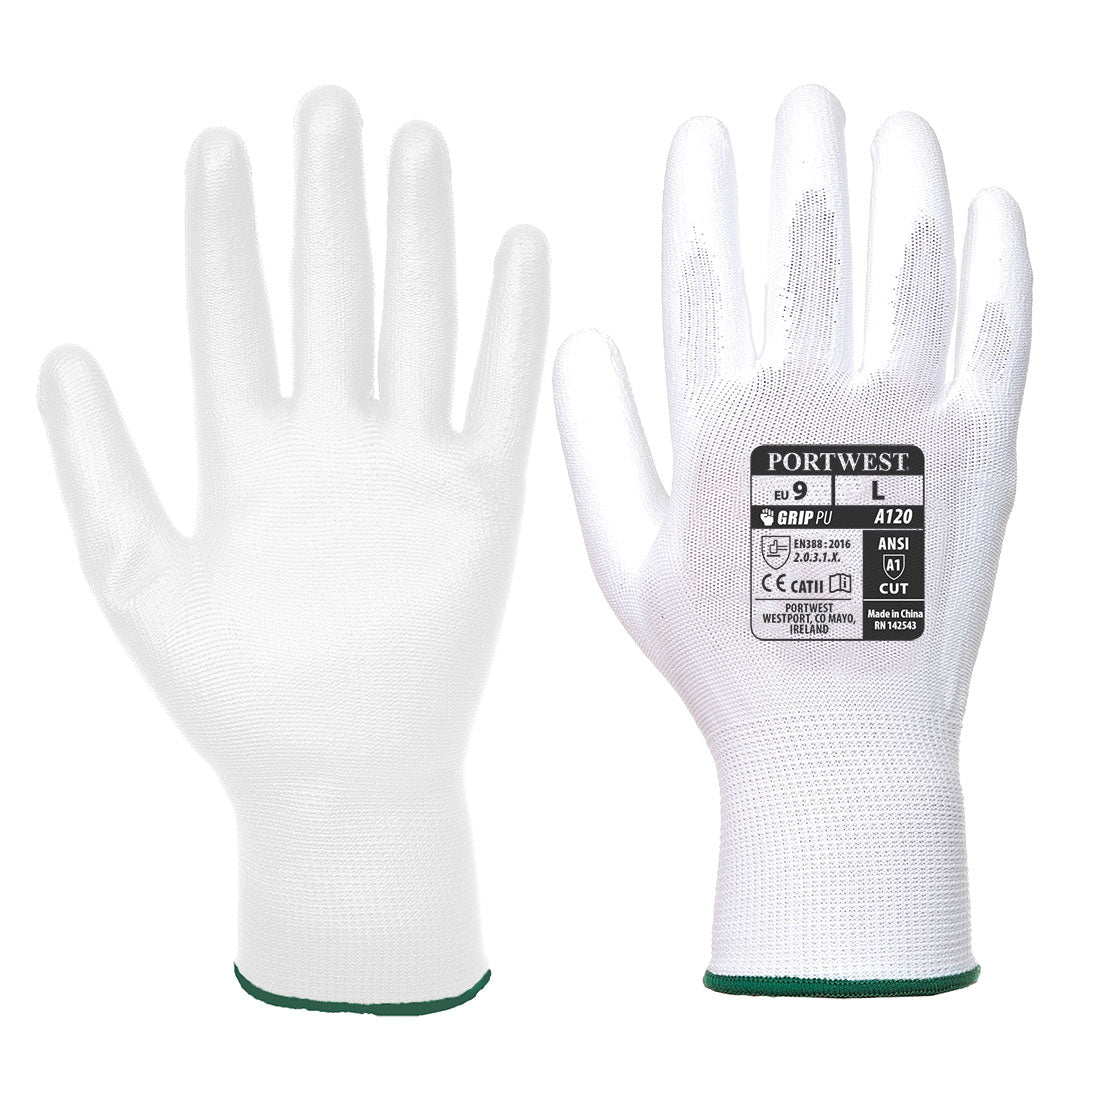 Vending PU Palm Glove